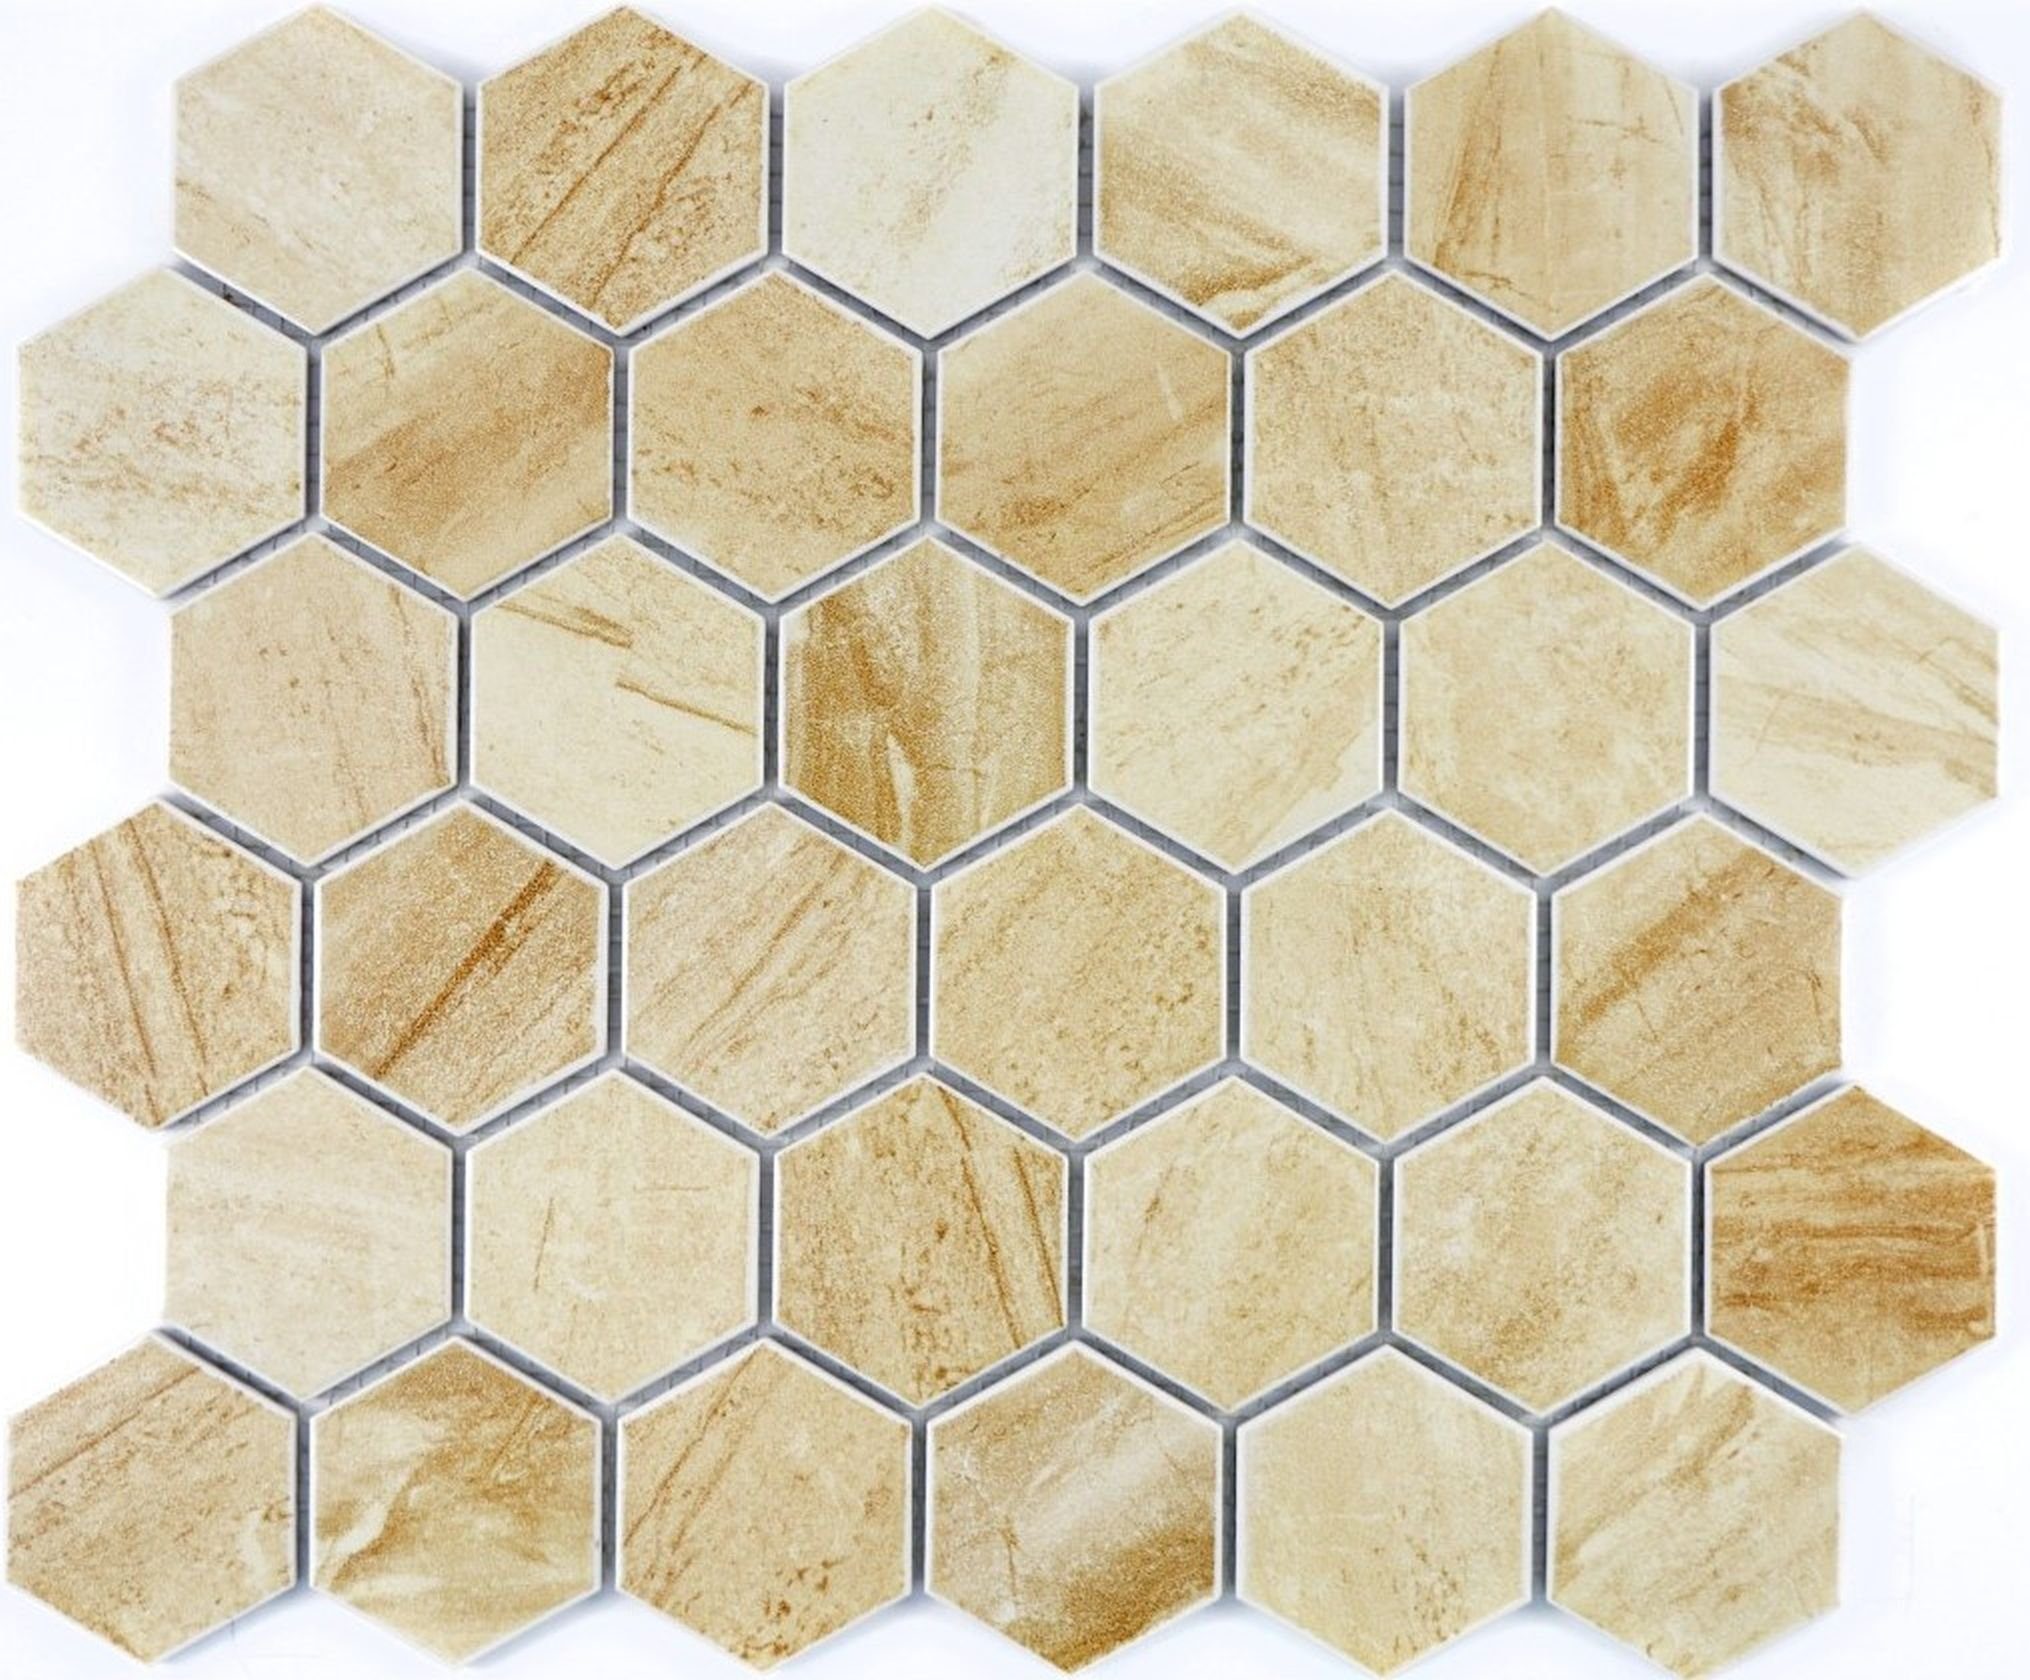 Mosani Mosaikfliesen Sechseck Mosaik Fliese Keramik Travertin beige matt Küche Bad | Fliesen